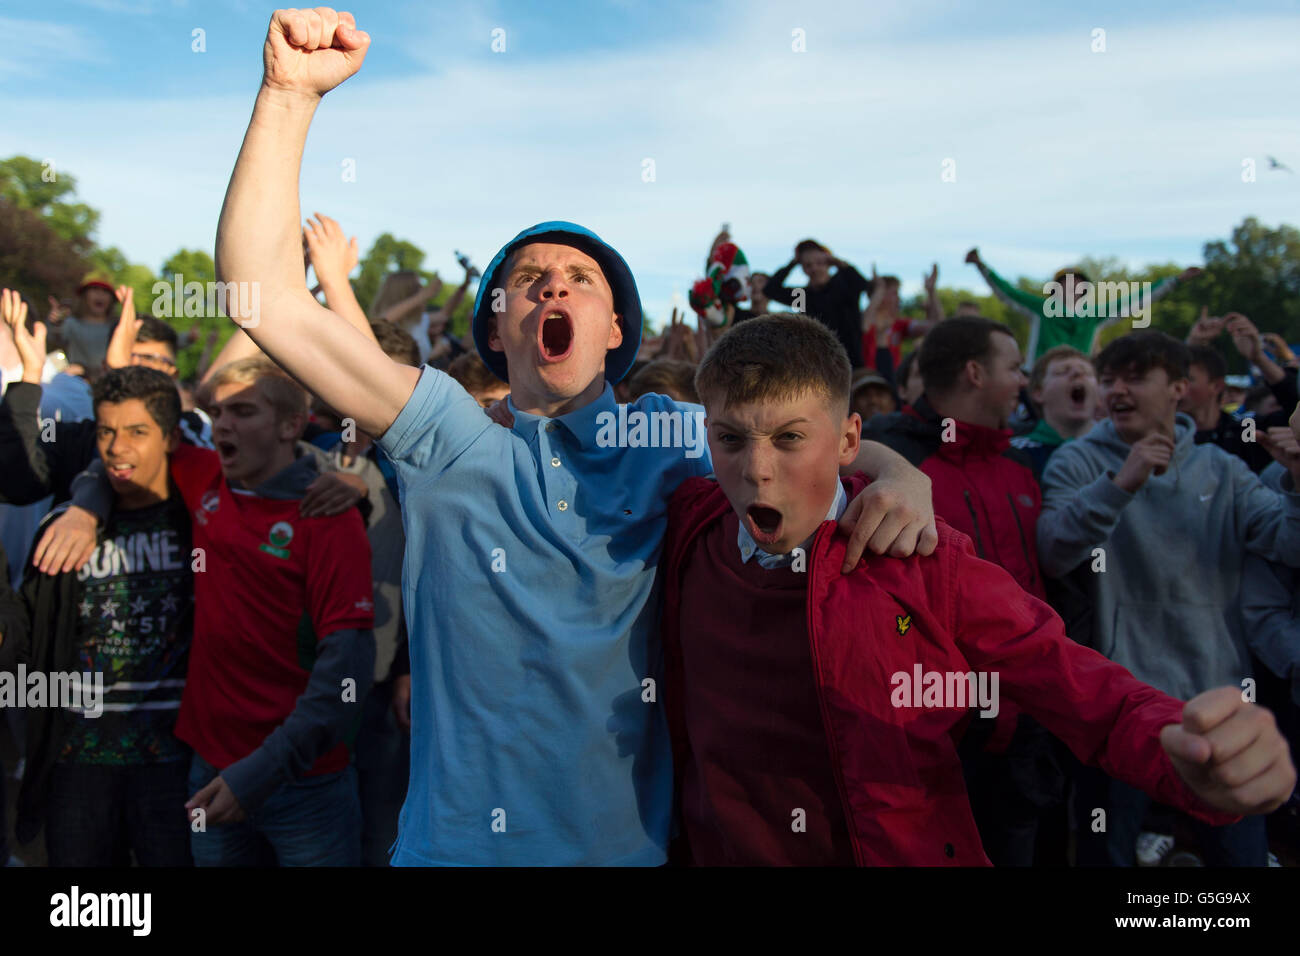 Il Galles gli appassionati di calcio al Galles sostenitori Fan Zone in Cooper nel campo, Cardiff, per l'Euro 2016 Galles v Russia videogame. Foto Stock